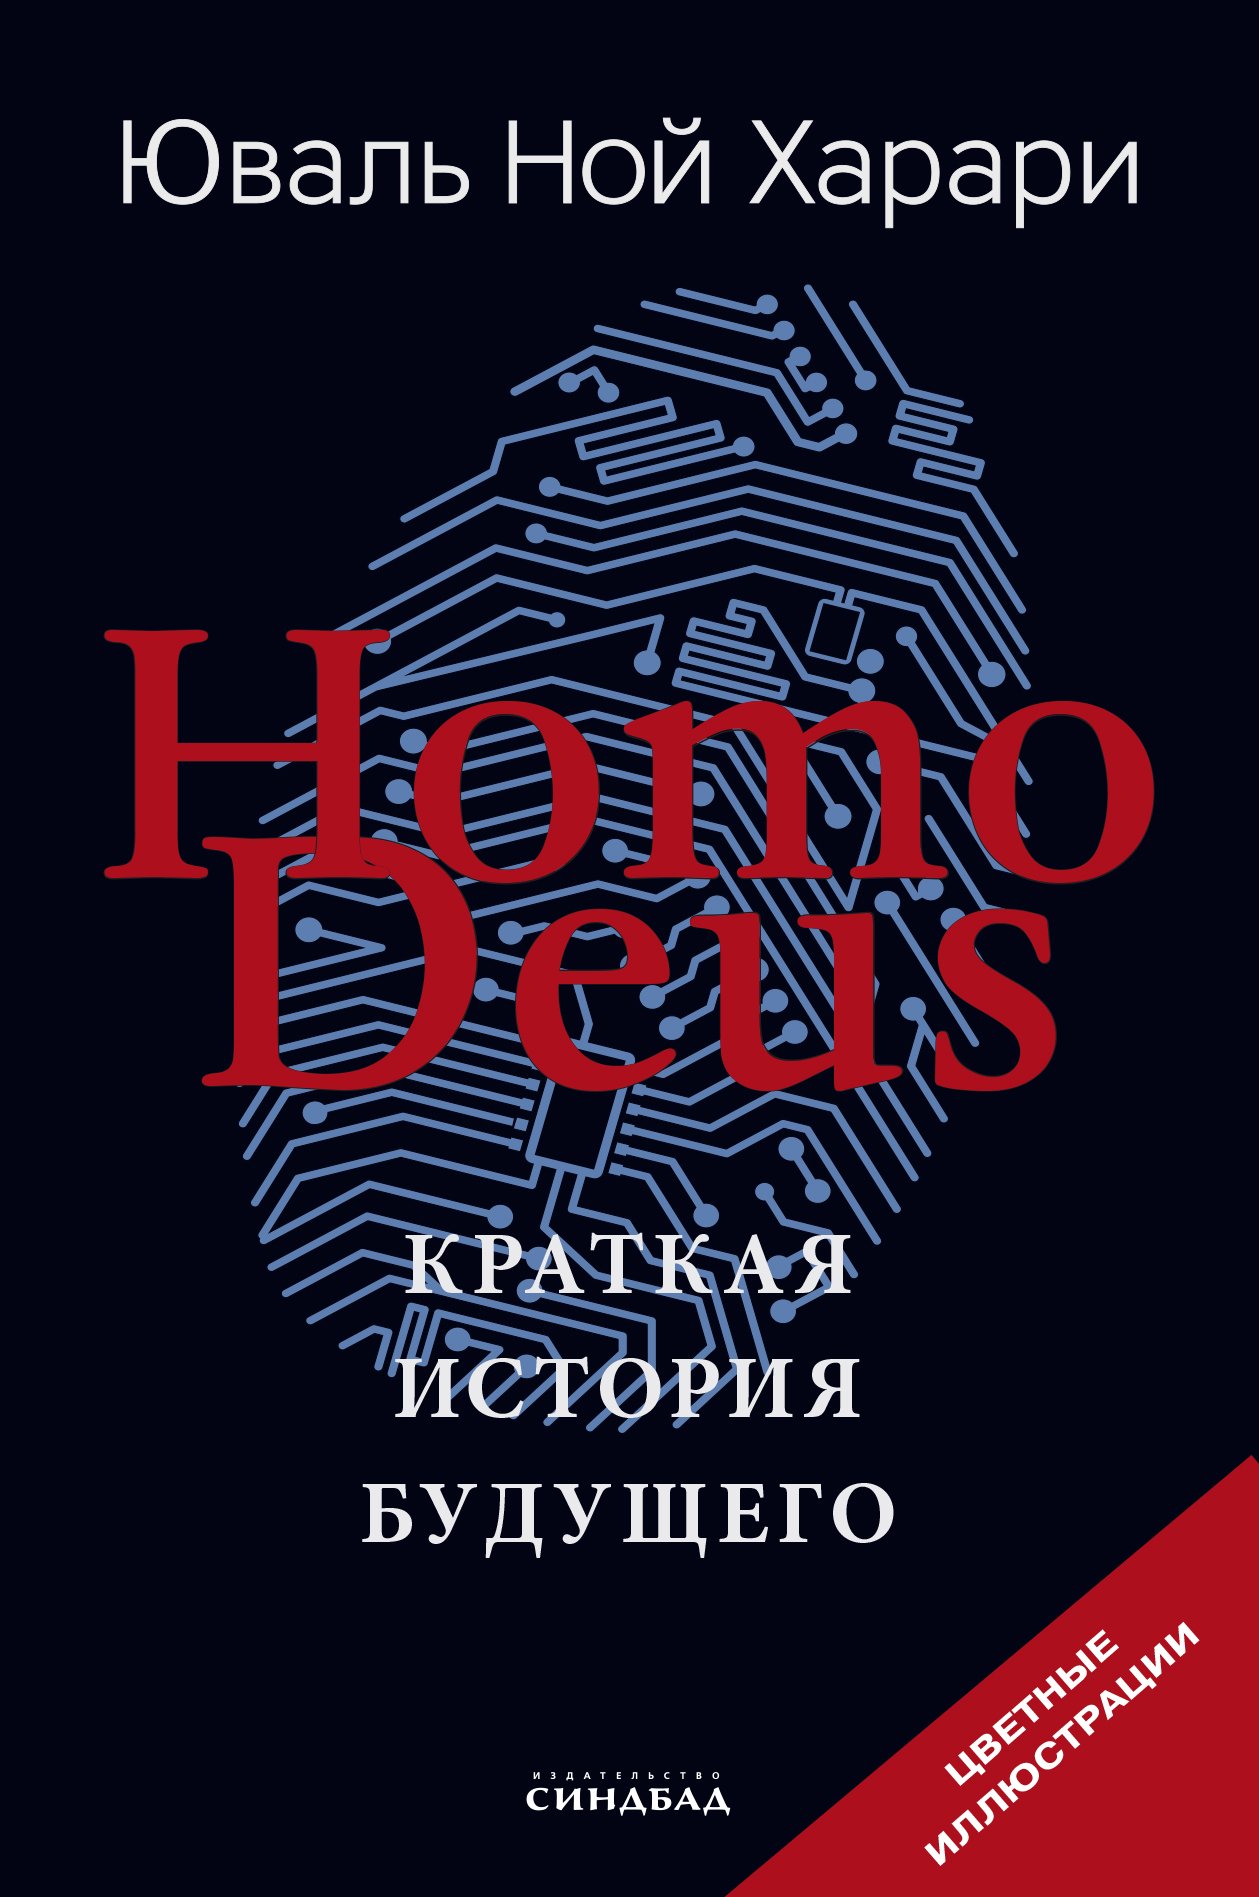 Харари Юваль Ной - Homo Deus. Краткая история будущего (Цветное подарочное издание)